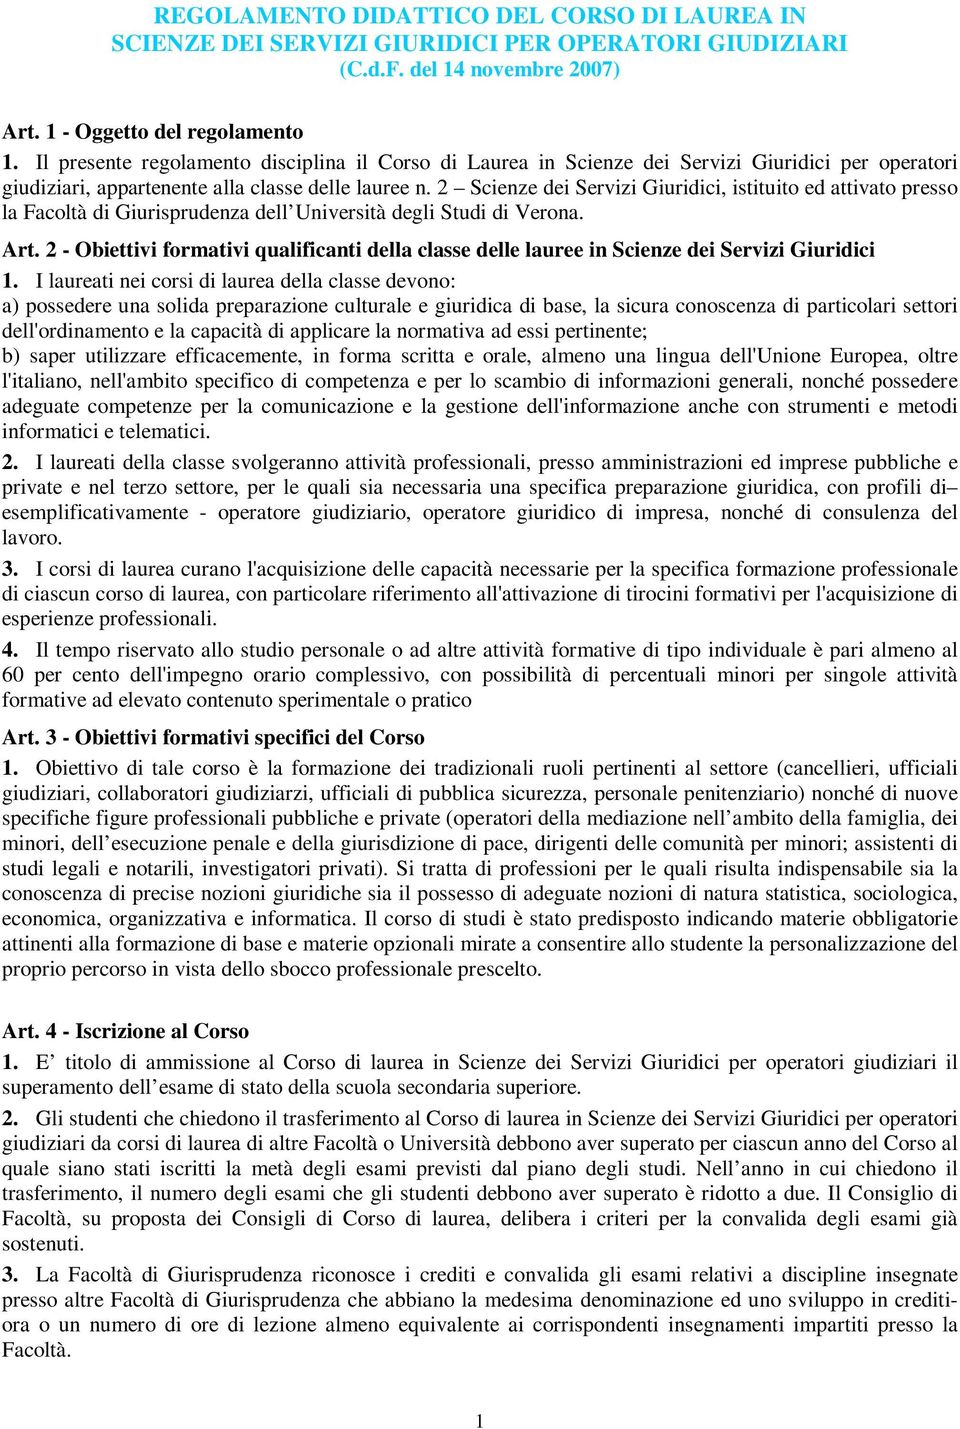 2 Scienze dei Servizi Giuridici, istituito ed attivato presso la Facoltà di Giurisprudenza dell Università degli Studi di Verona. Art.